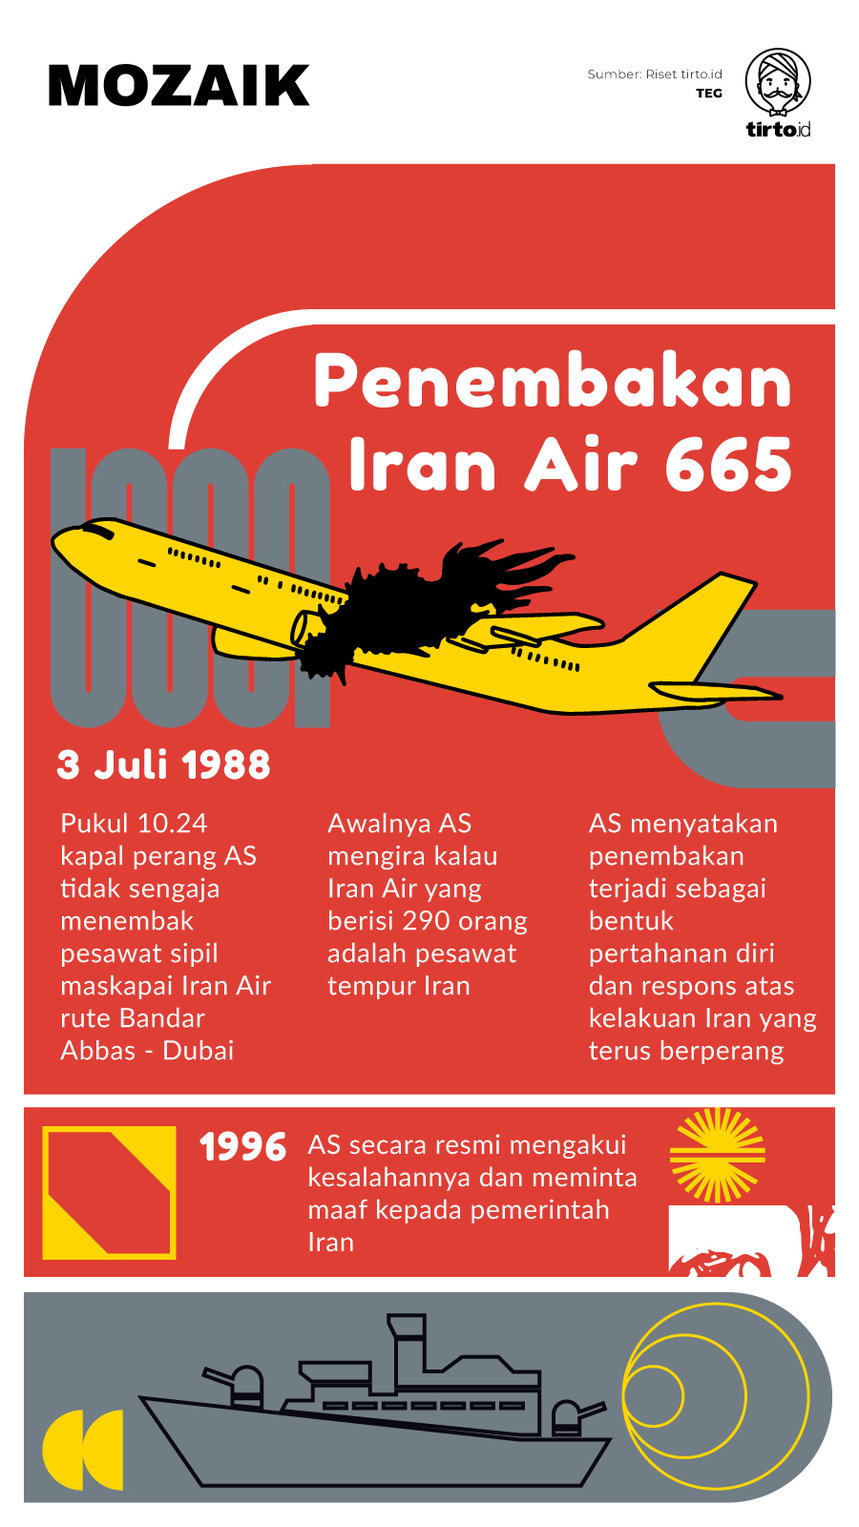 Infografik Mozaik Iran Air